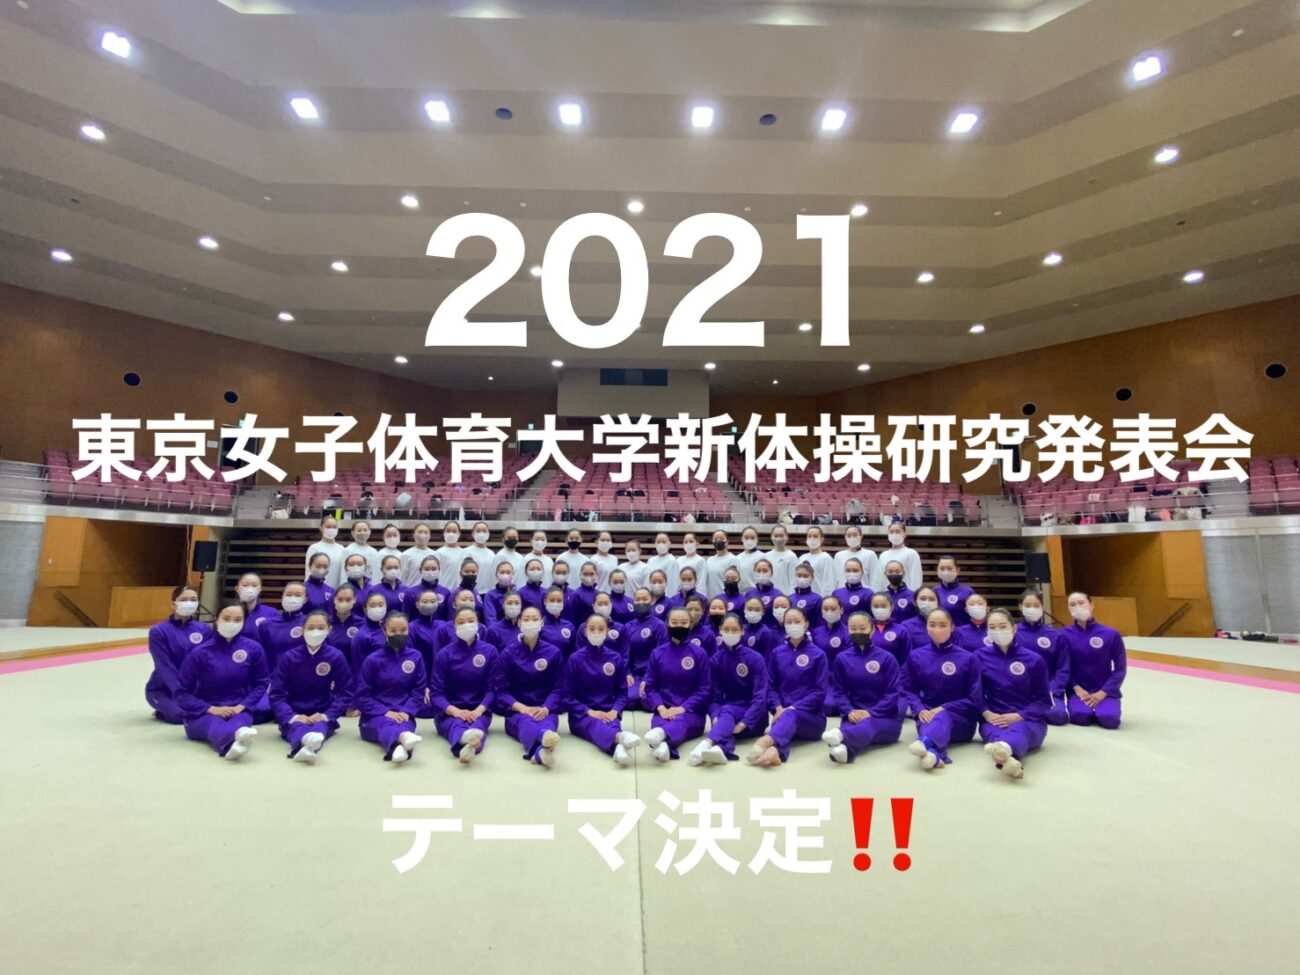 2021年 東京女子体育大学新体操研究発表会 テーマ決定‼️